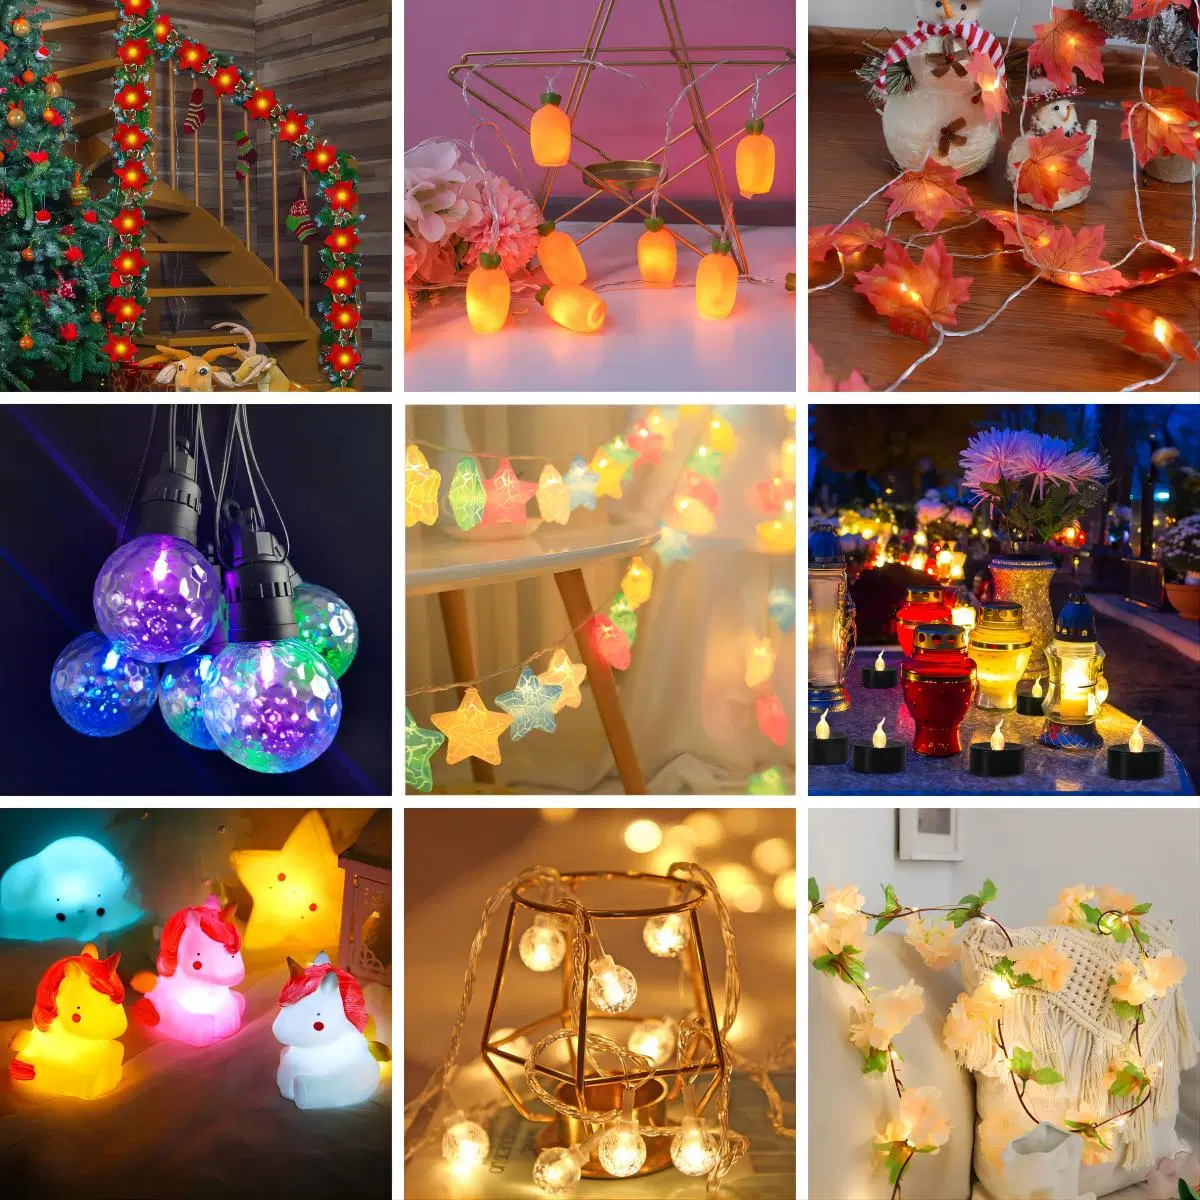 OEM Fabrik Customized Xmas Dekorative Lichter Navidad Dekor Großhandelspreis LED-Streifen Licht Home Dekoration Licht Weihnachten Beleuchtung Hersteller in China